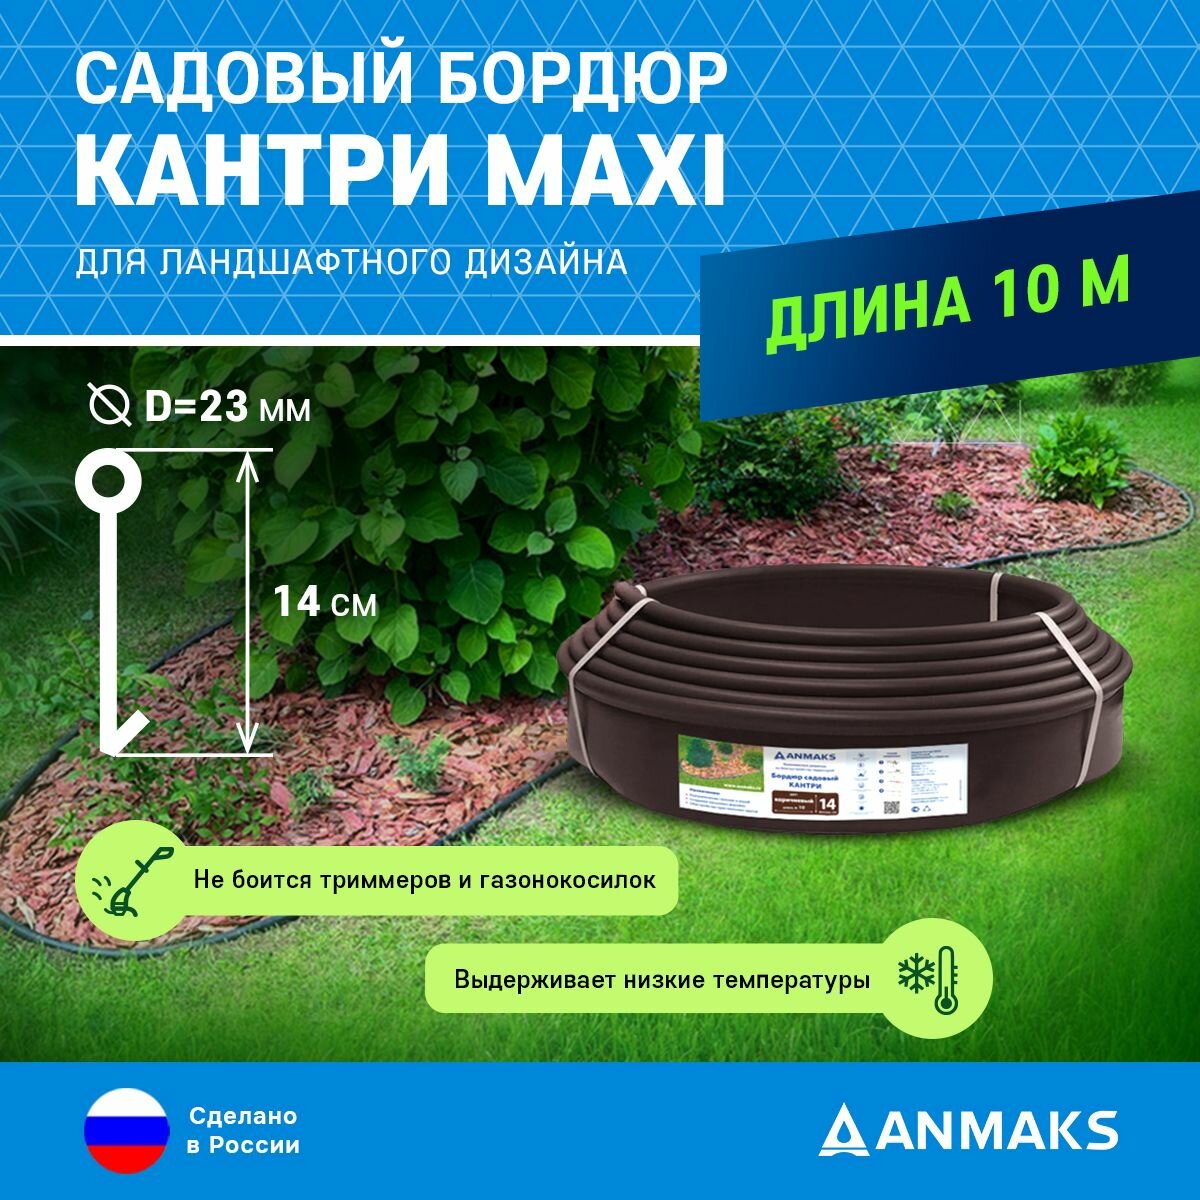 Пластиковый садовый бордюр ANMAKS Кантри MAXI коричневый, длина 10000 мм, высота 140 мм, арт. 82402-К